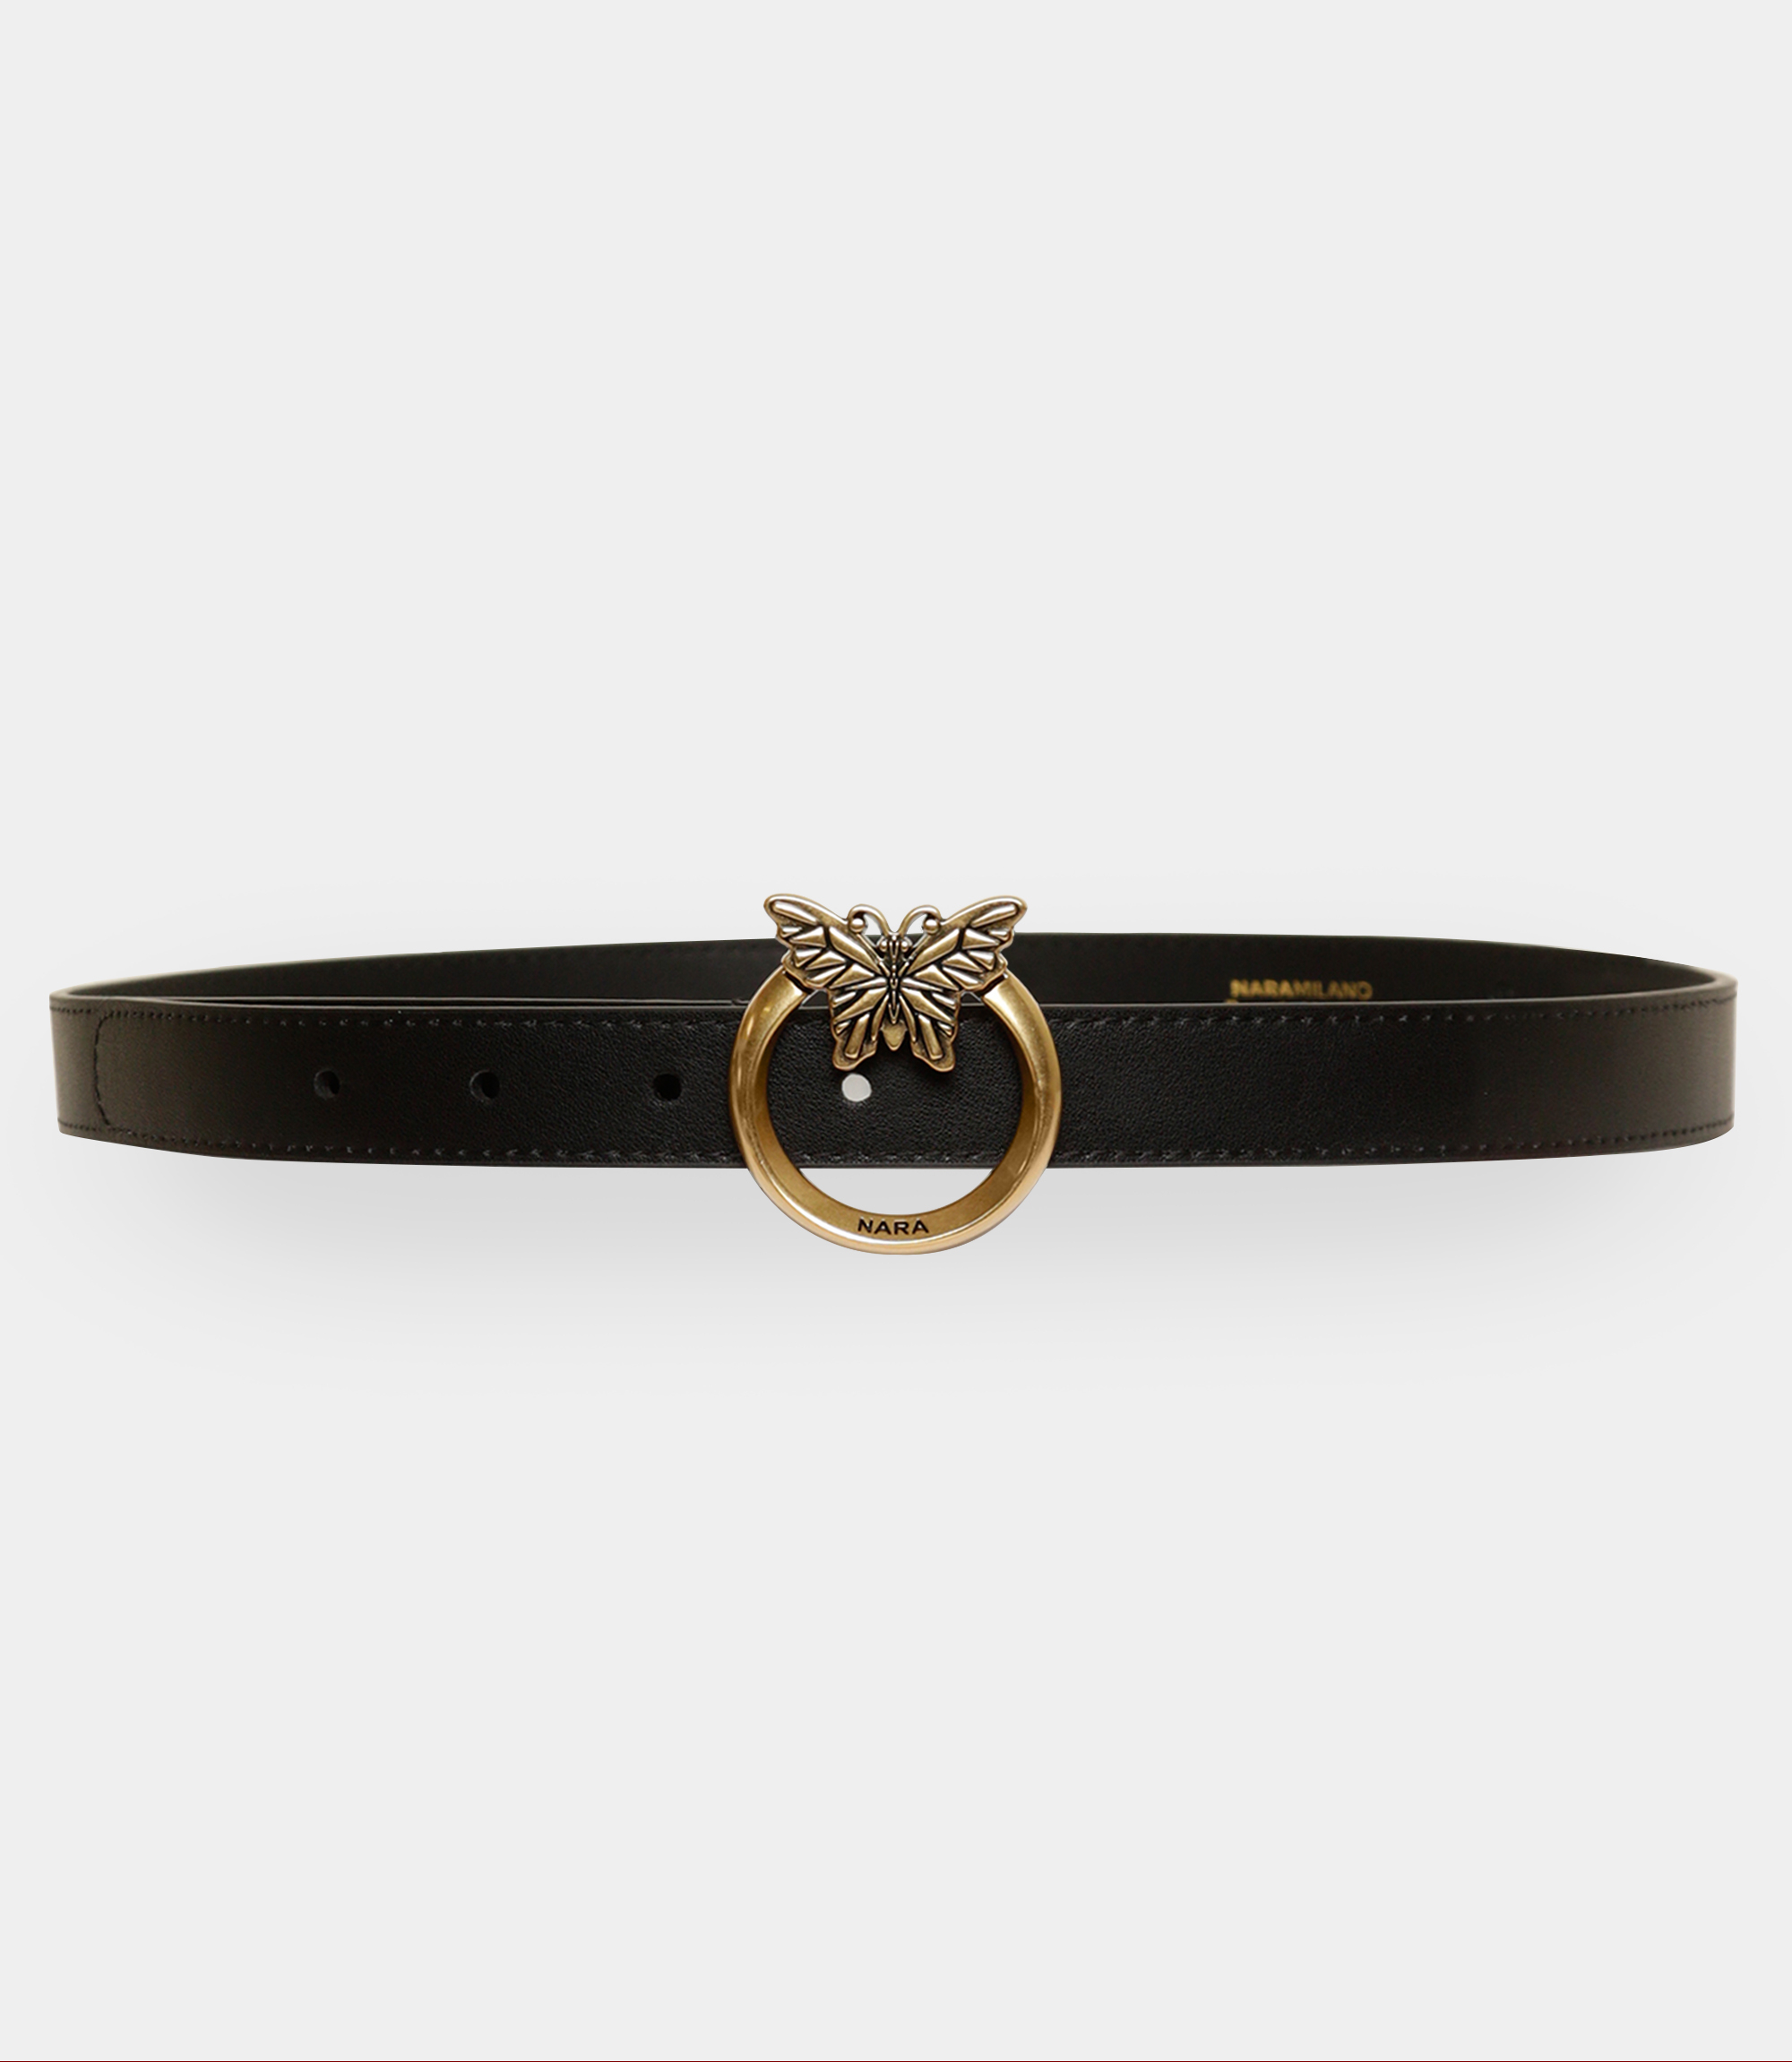 Thin leather belt with Nara logo - Black - NaraMilano